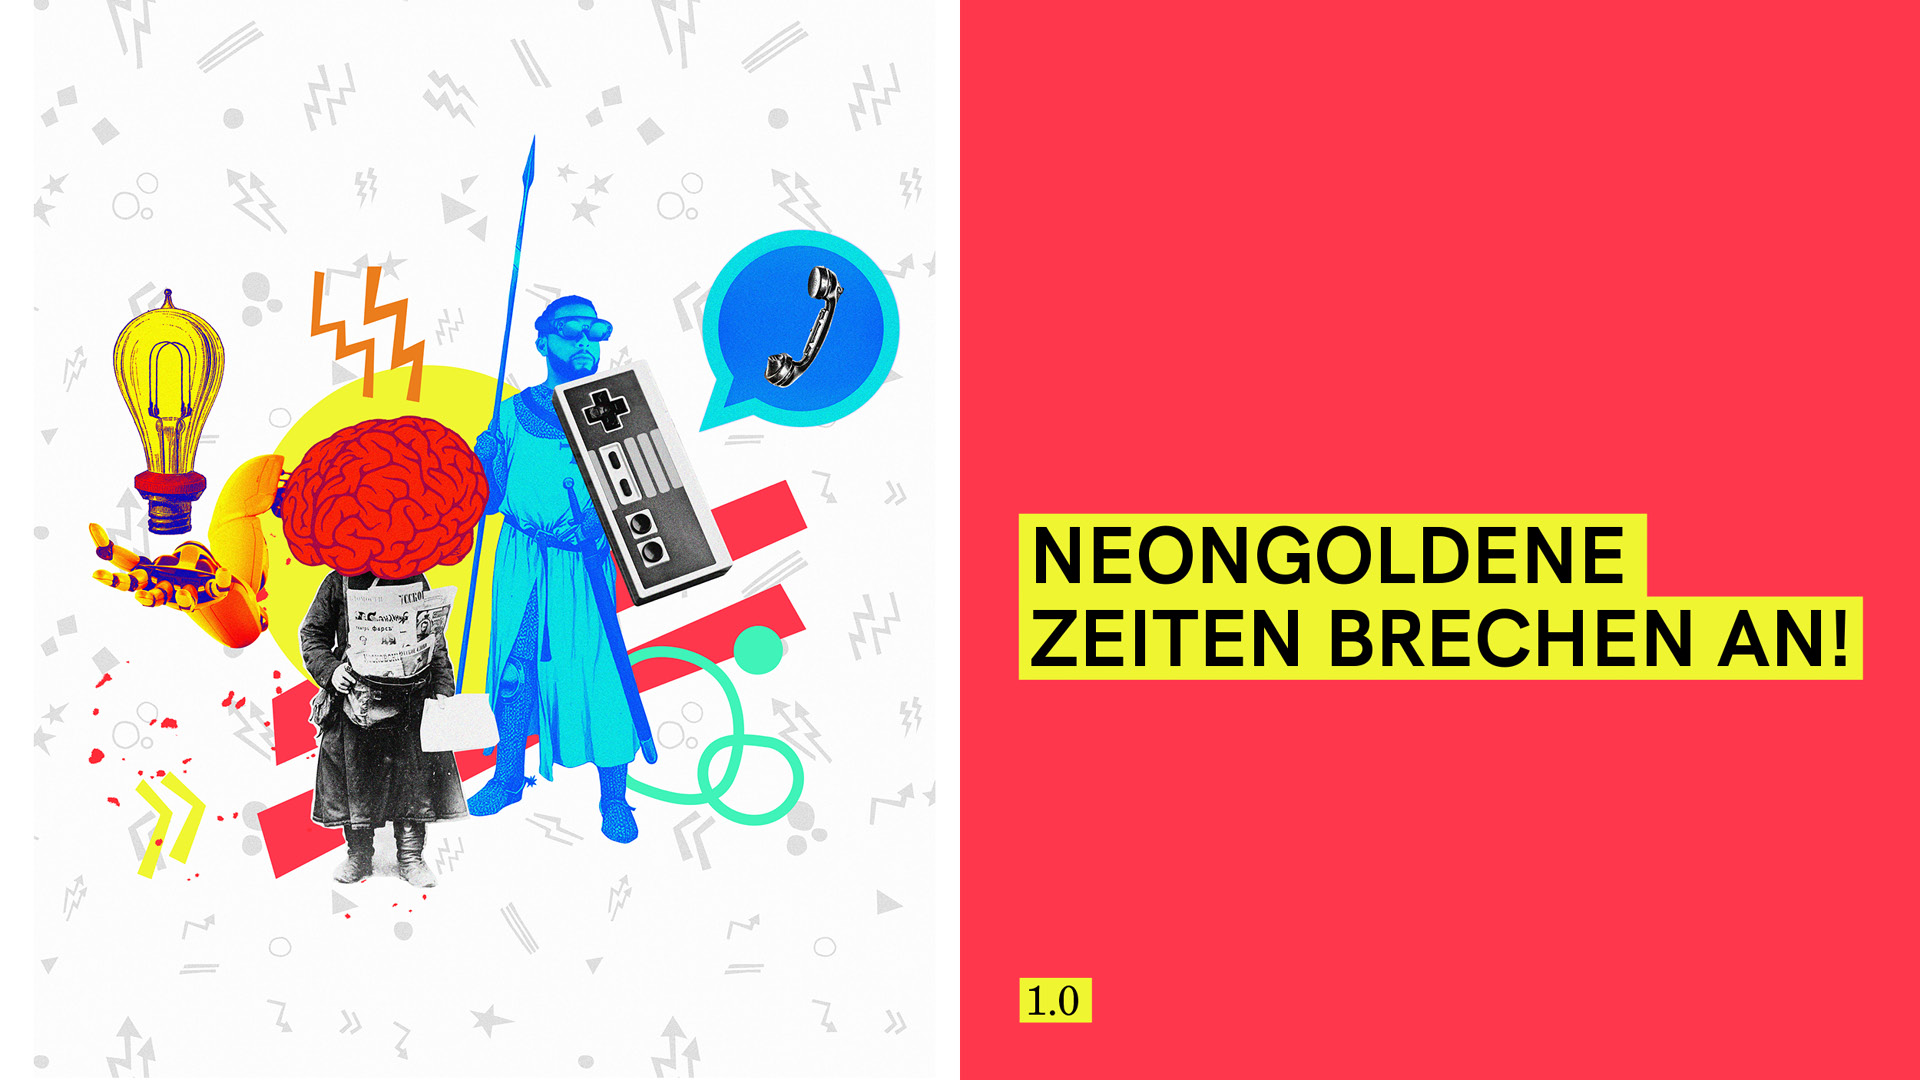 Neon Gold Innovations "neongolgende Zeiten brechen an"